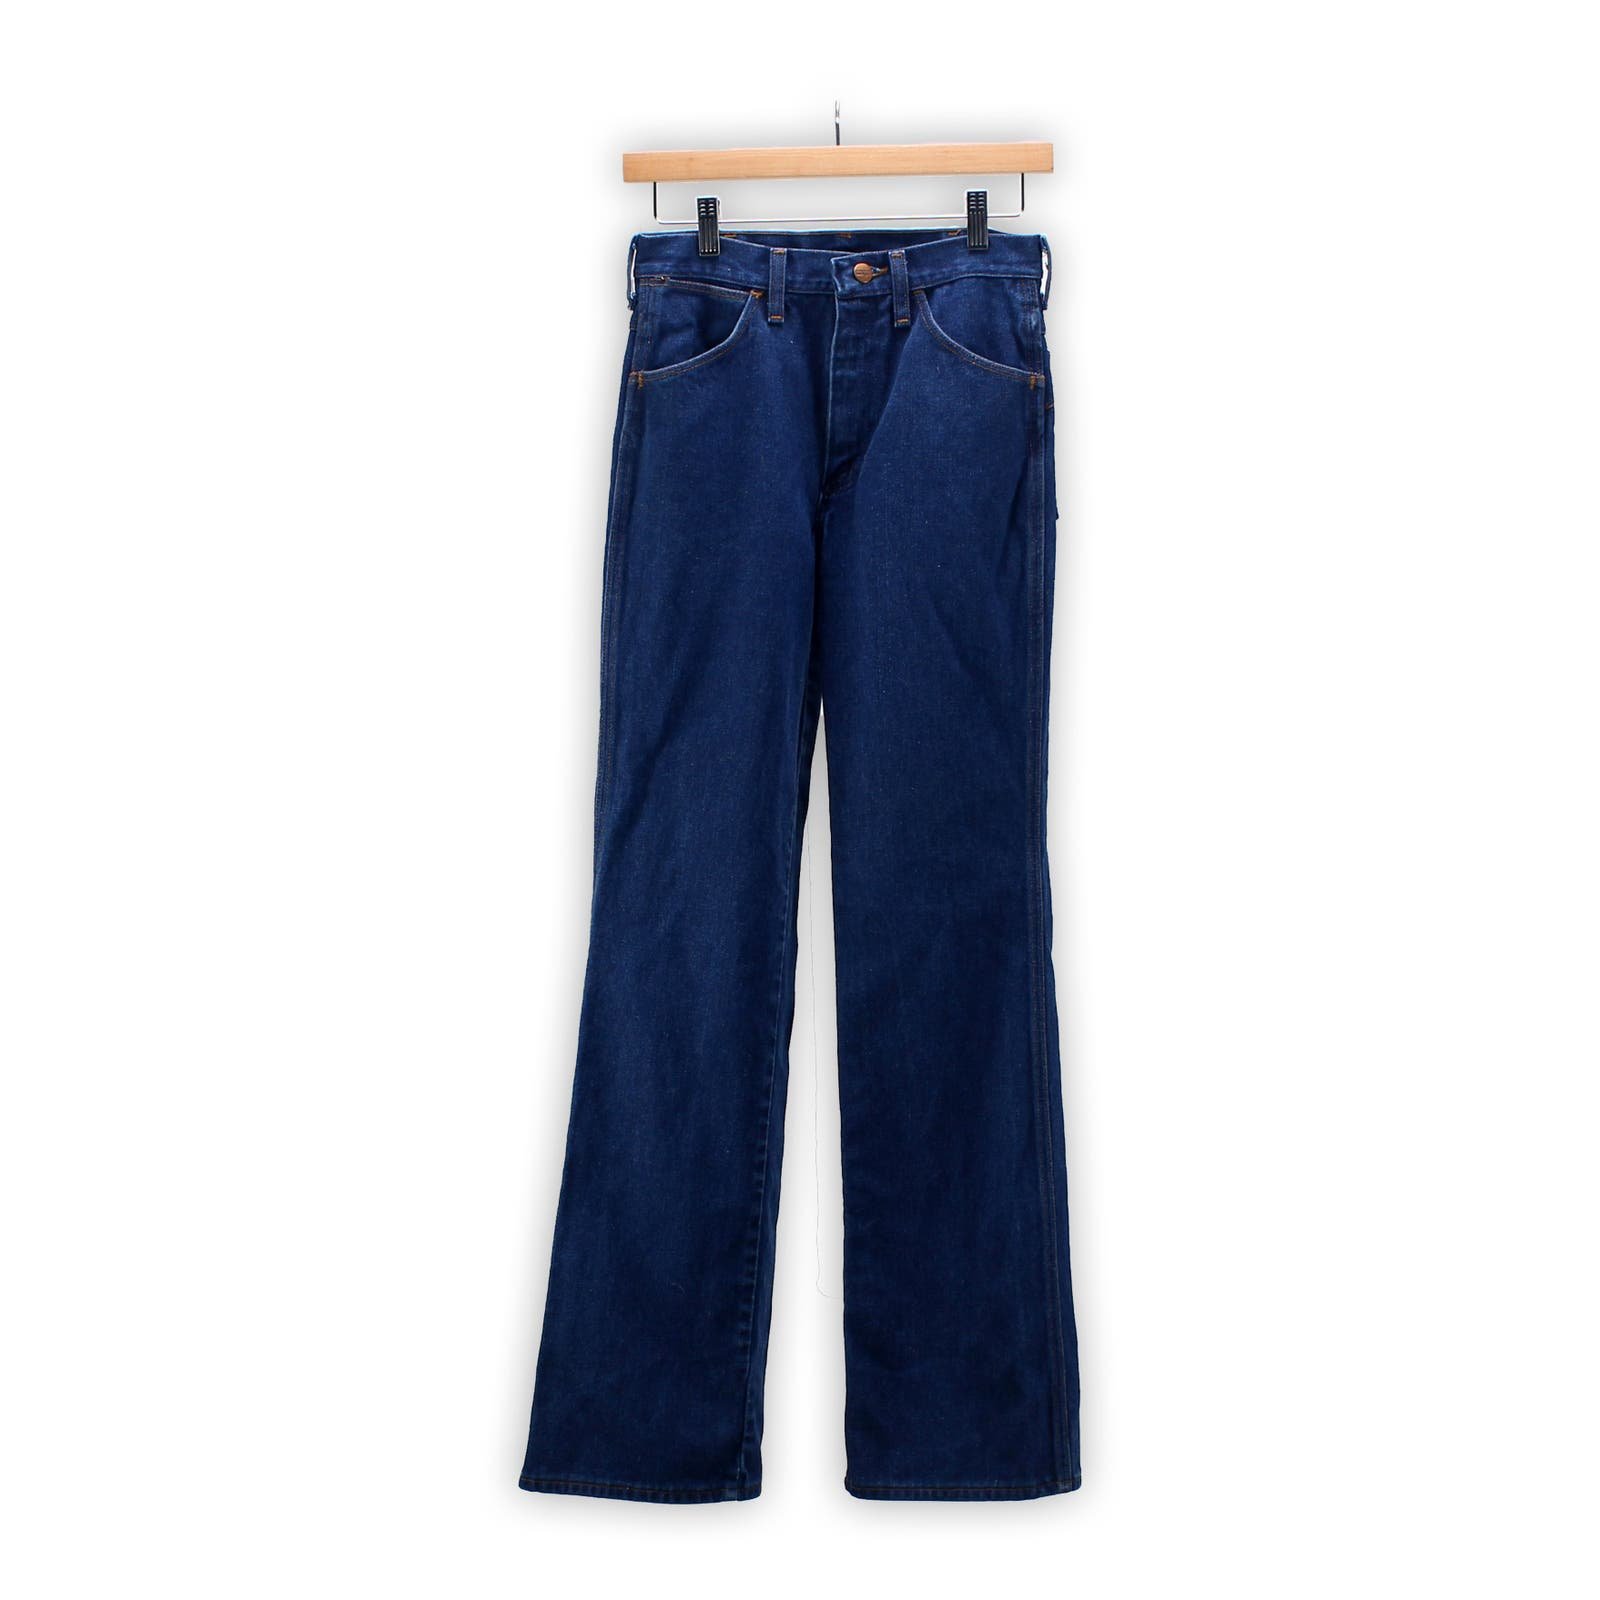 Vintage Wrangler Jeans - 70s Flared Denim Pants - Slim Fit - 81610NV - Size 27 GJvtEMu8O